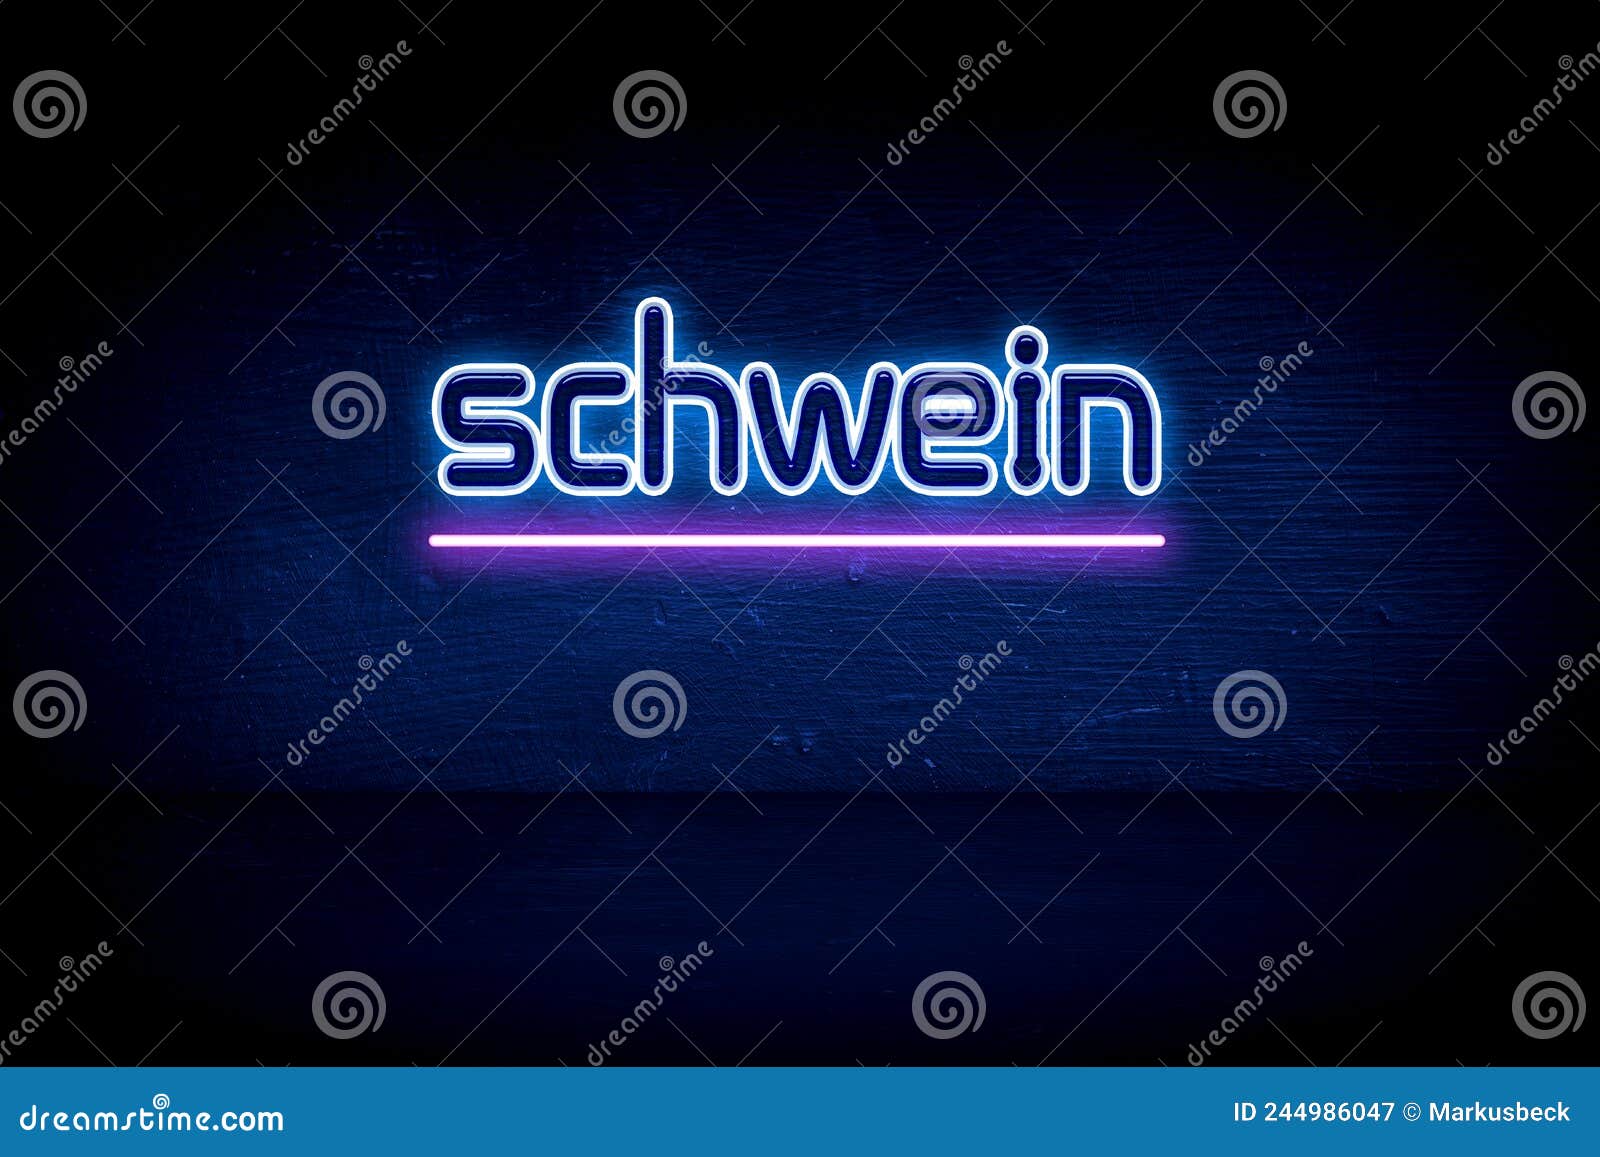 schwein - blue neon announcement signboard